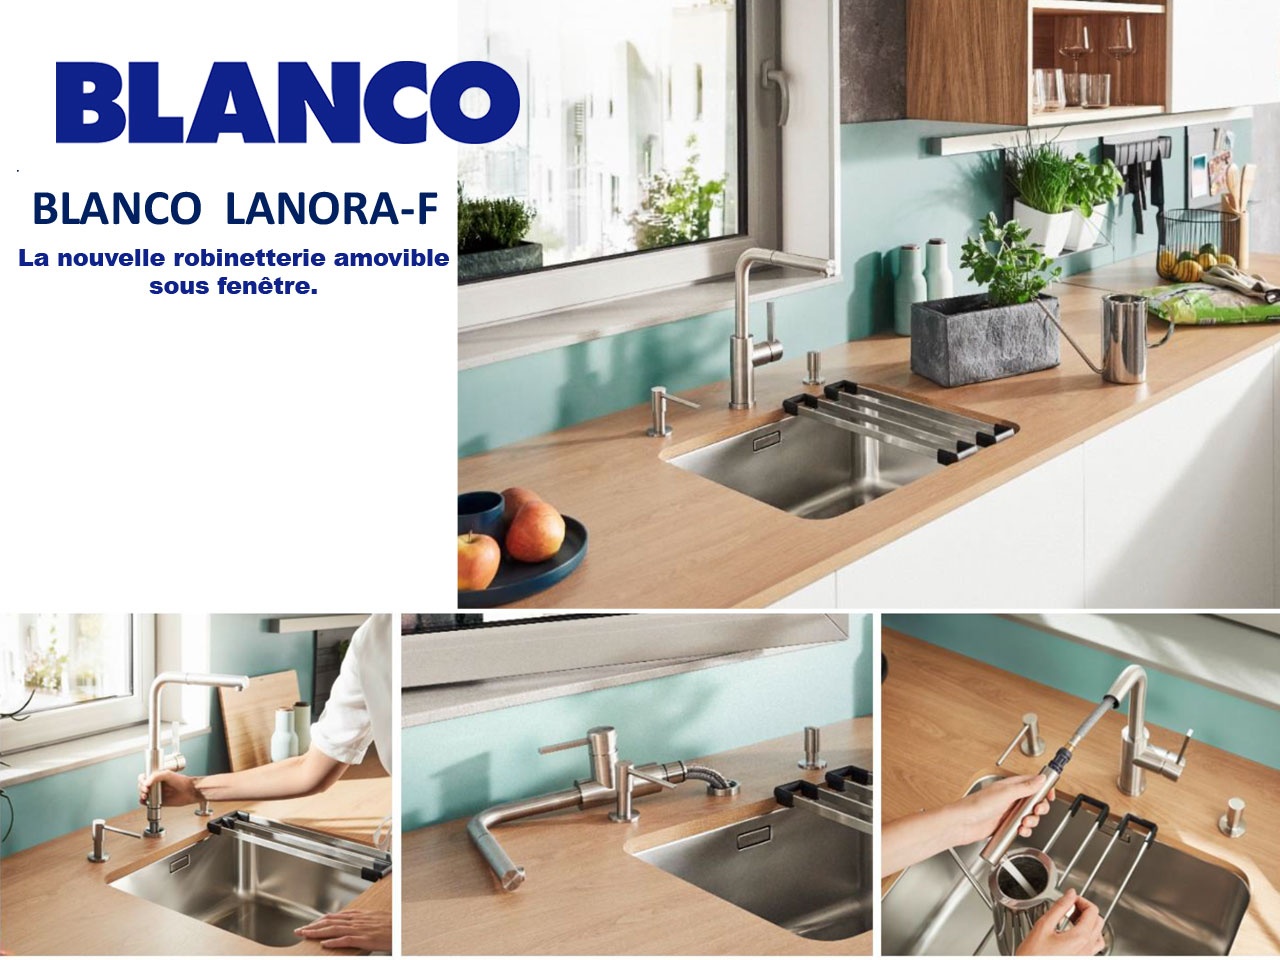 BLANCO LANORA-F : une nouvelle robinetterie amovible sous fenêtre